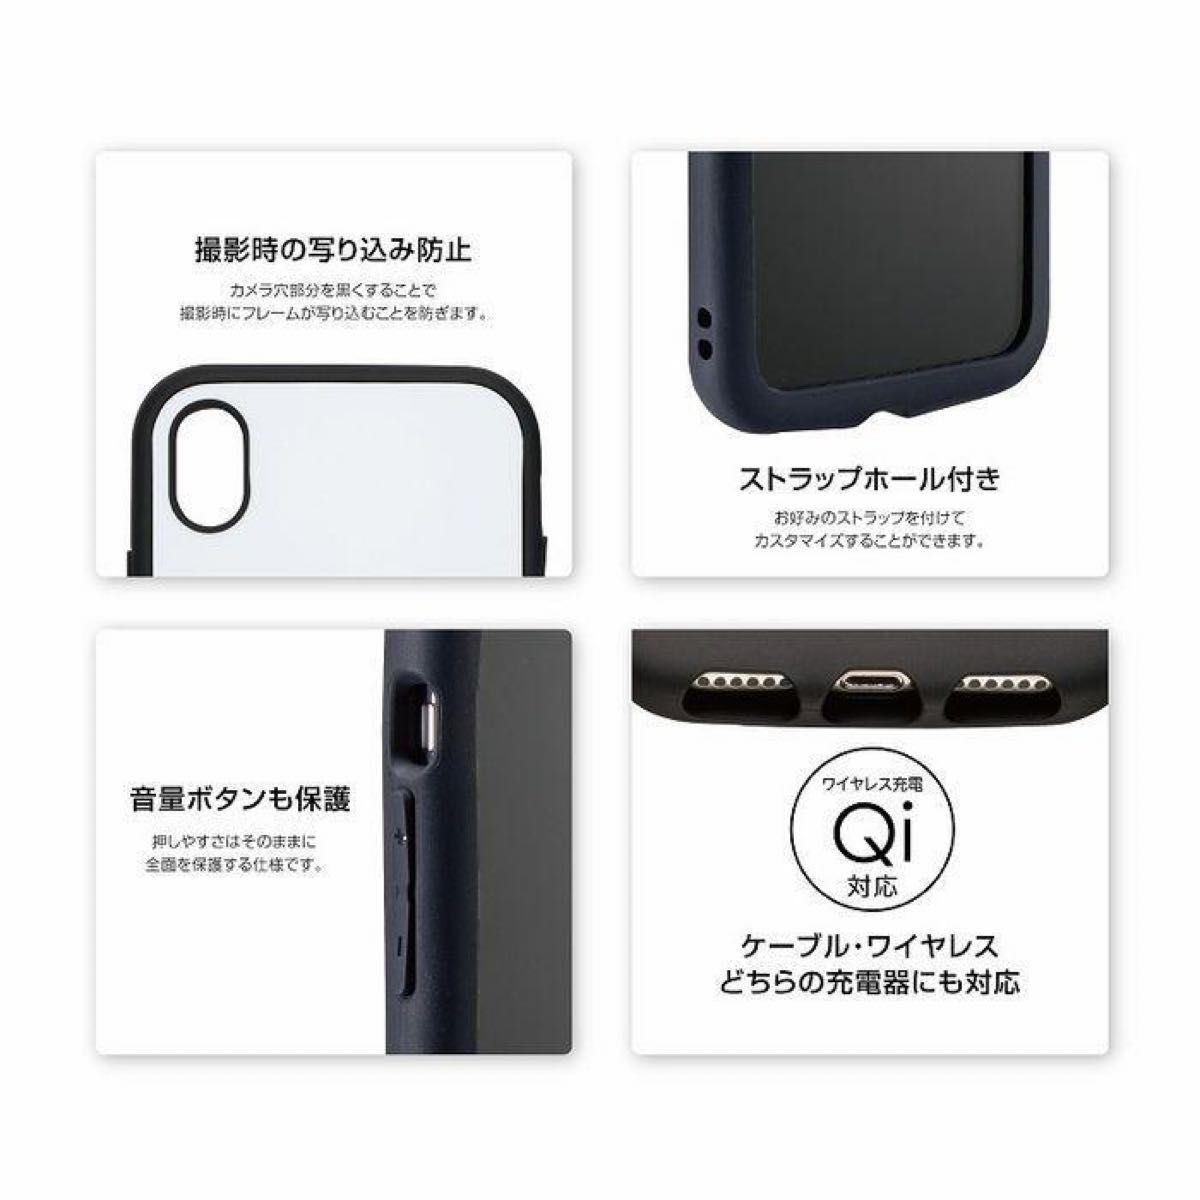 【タイムセール500円】iphone12miniケース 599円セール開催中!! iphone12miniケース カバー